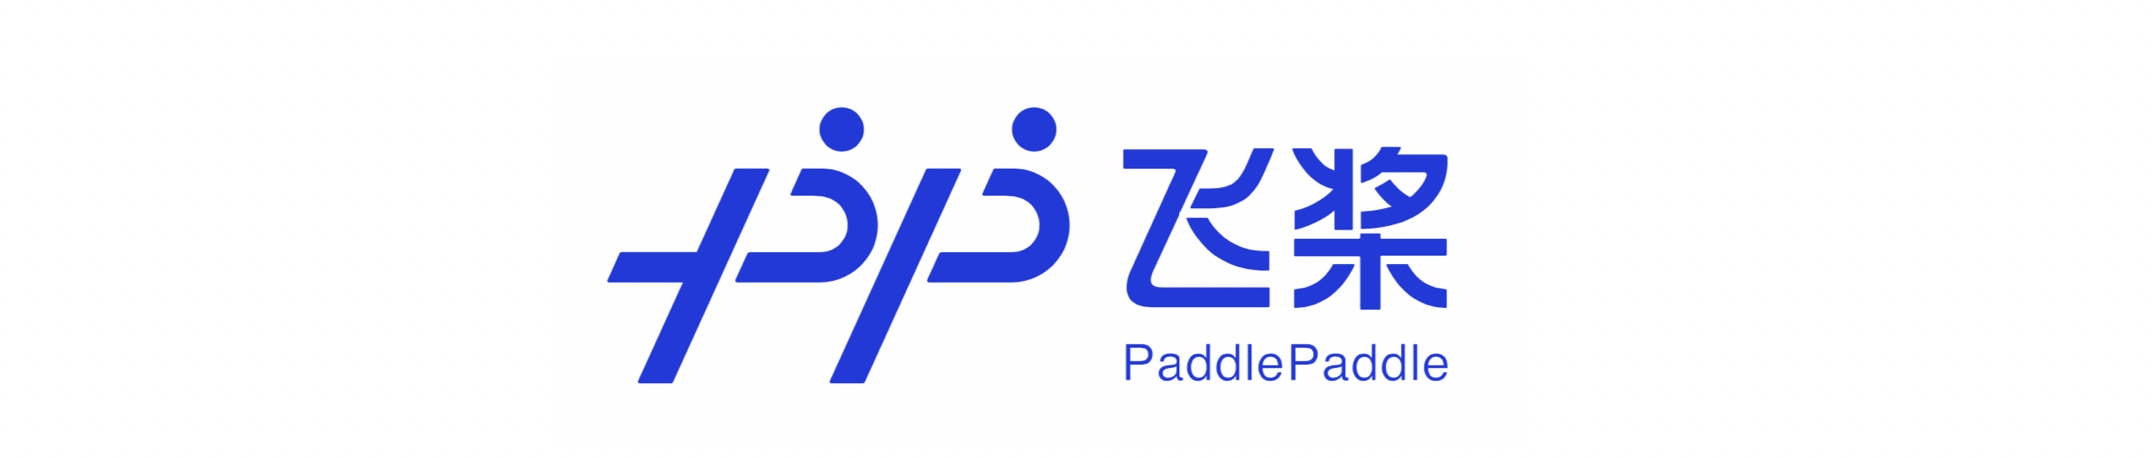 PaddlePaddle شعار